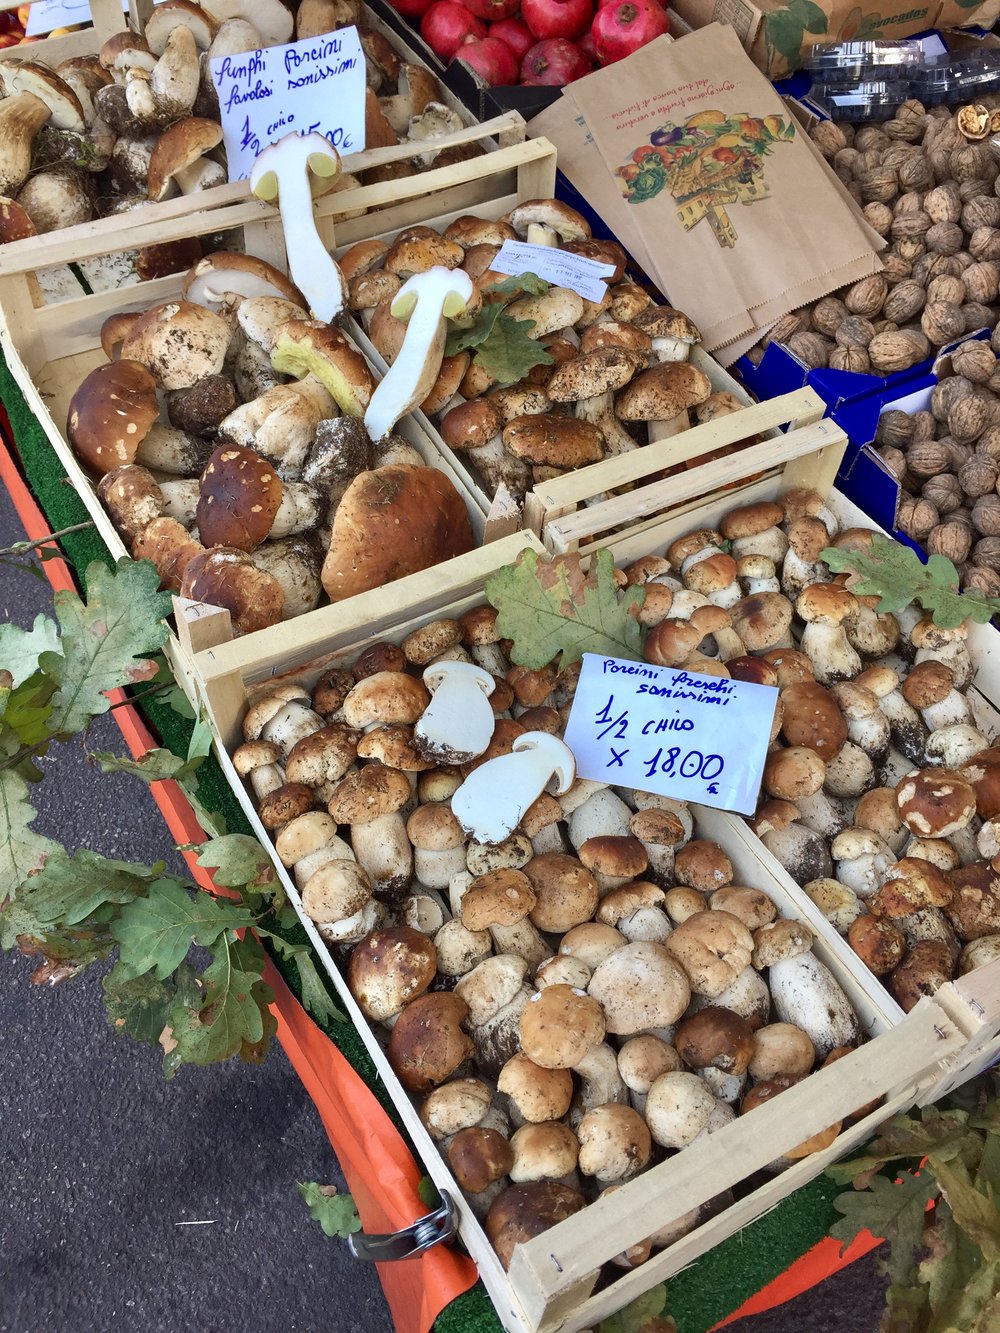 Mushrooms at a market in Copenhagen